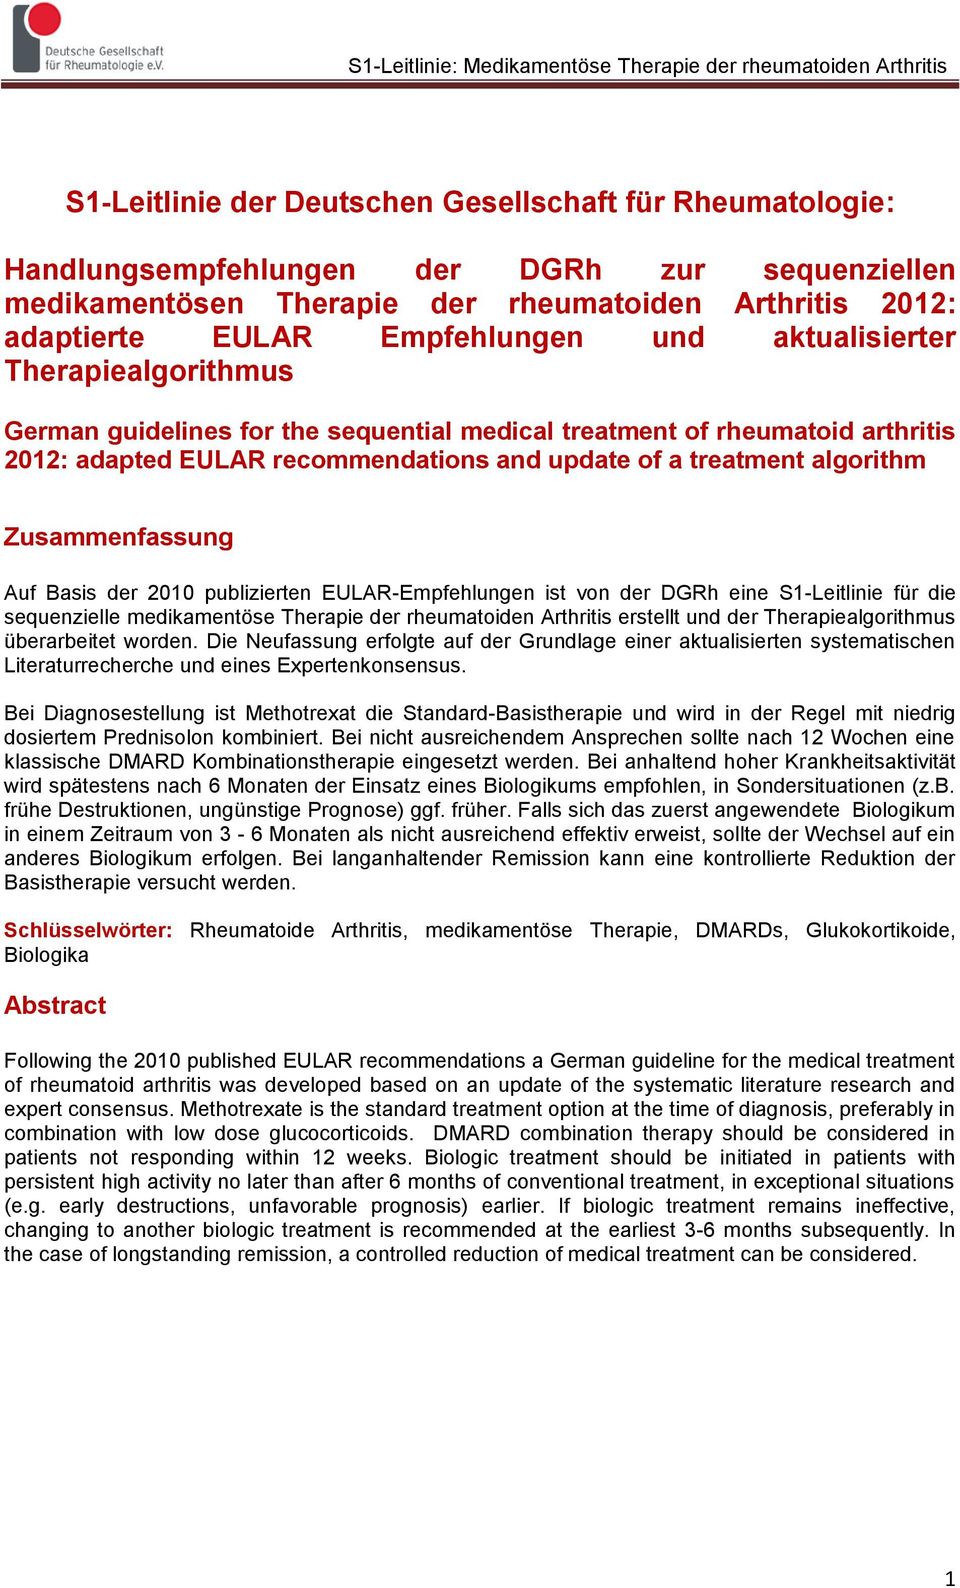 Zusammenfassung Auf Basis der 2010 publizierten EULAR-Empfehlungen ist von der DGRh eine S1-Leitlinie für die sequenzielle medikamentöse Therapie der rheumatoiden Arthritis erstellt und der